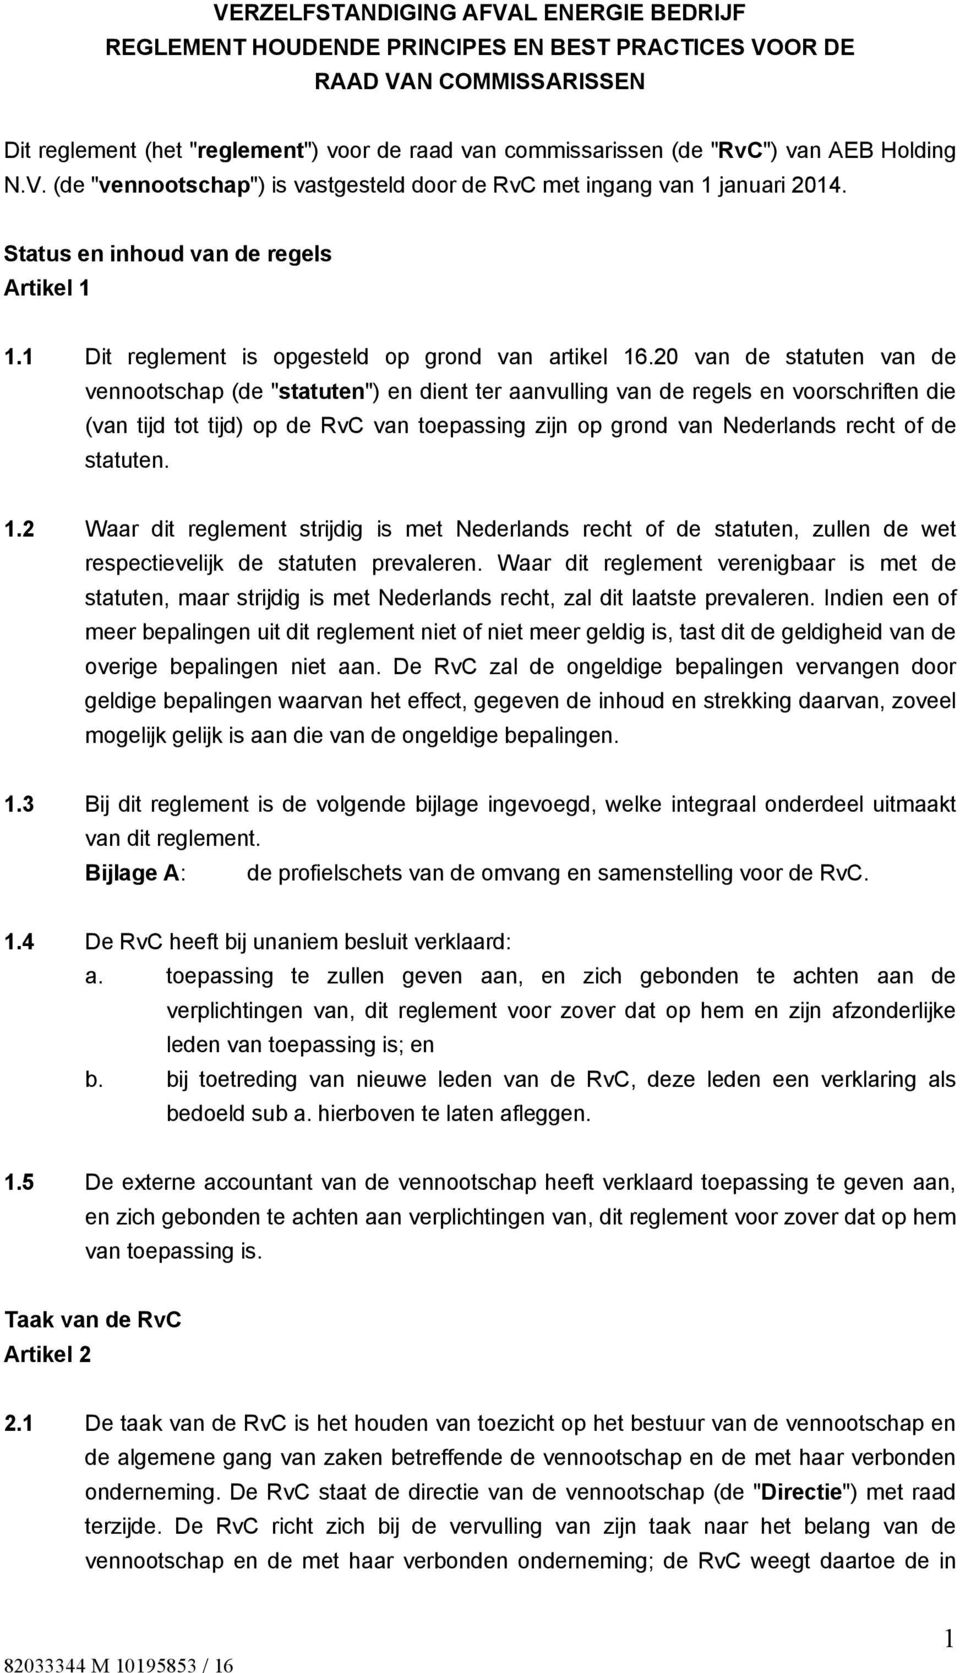 20 van de statuten van de vennootschap (de "statuten") en dient ter aanvulling van de regels en voorschriften die (van tijd tot tijd) op de RvC van toepassing zijn op grond van Nederlands recht of de